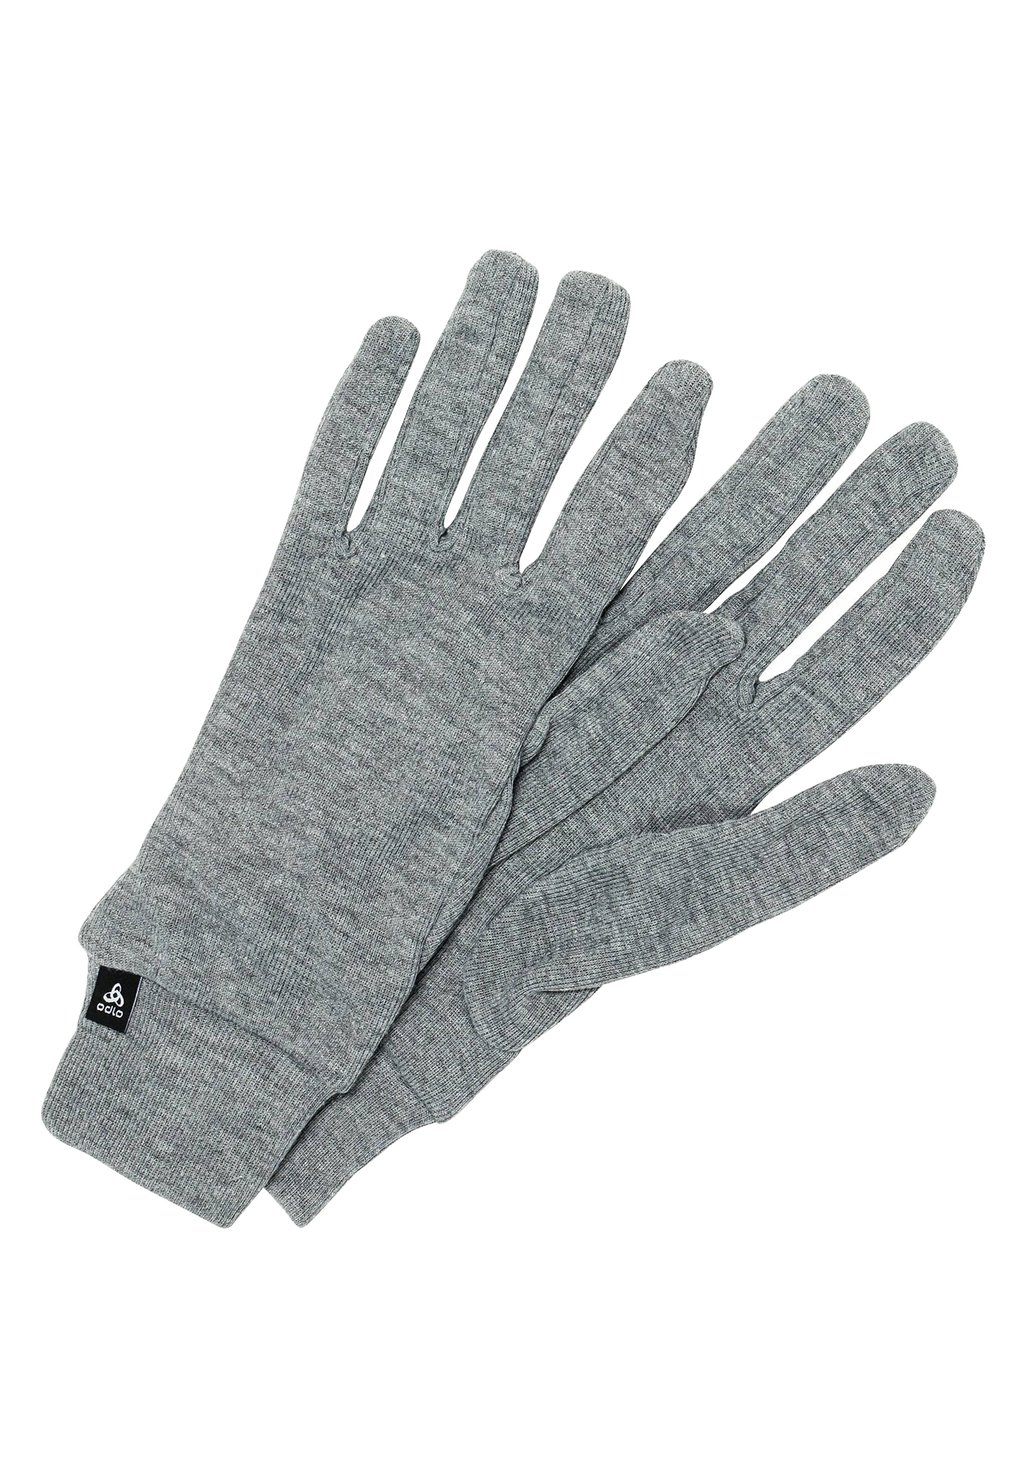 Перчатки UNISEX ODLO, цвет odlo steel grey melange цена и фото